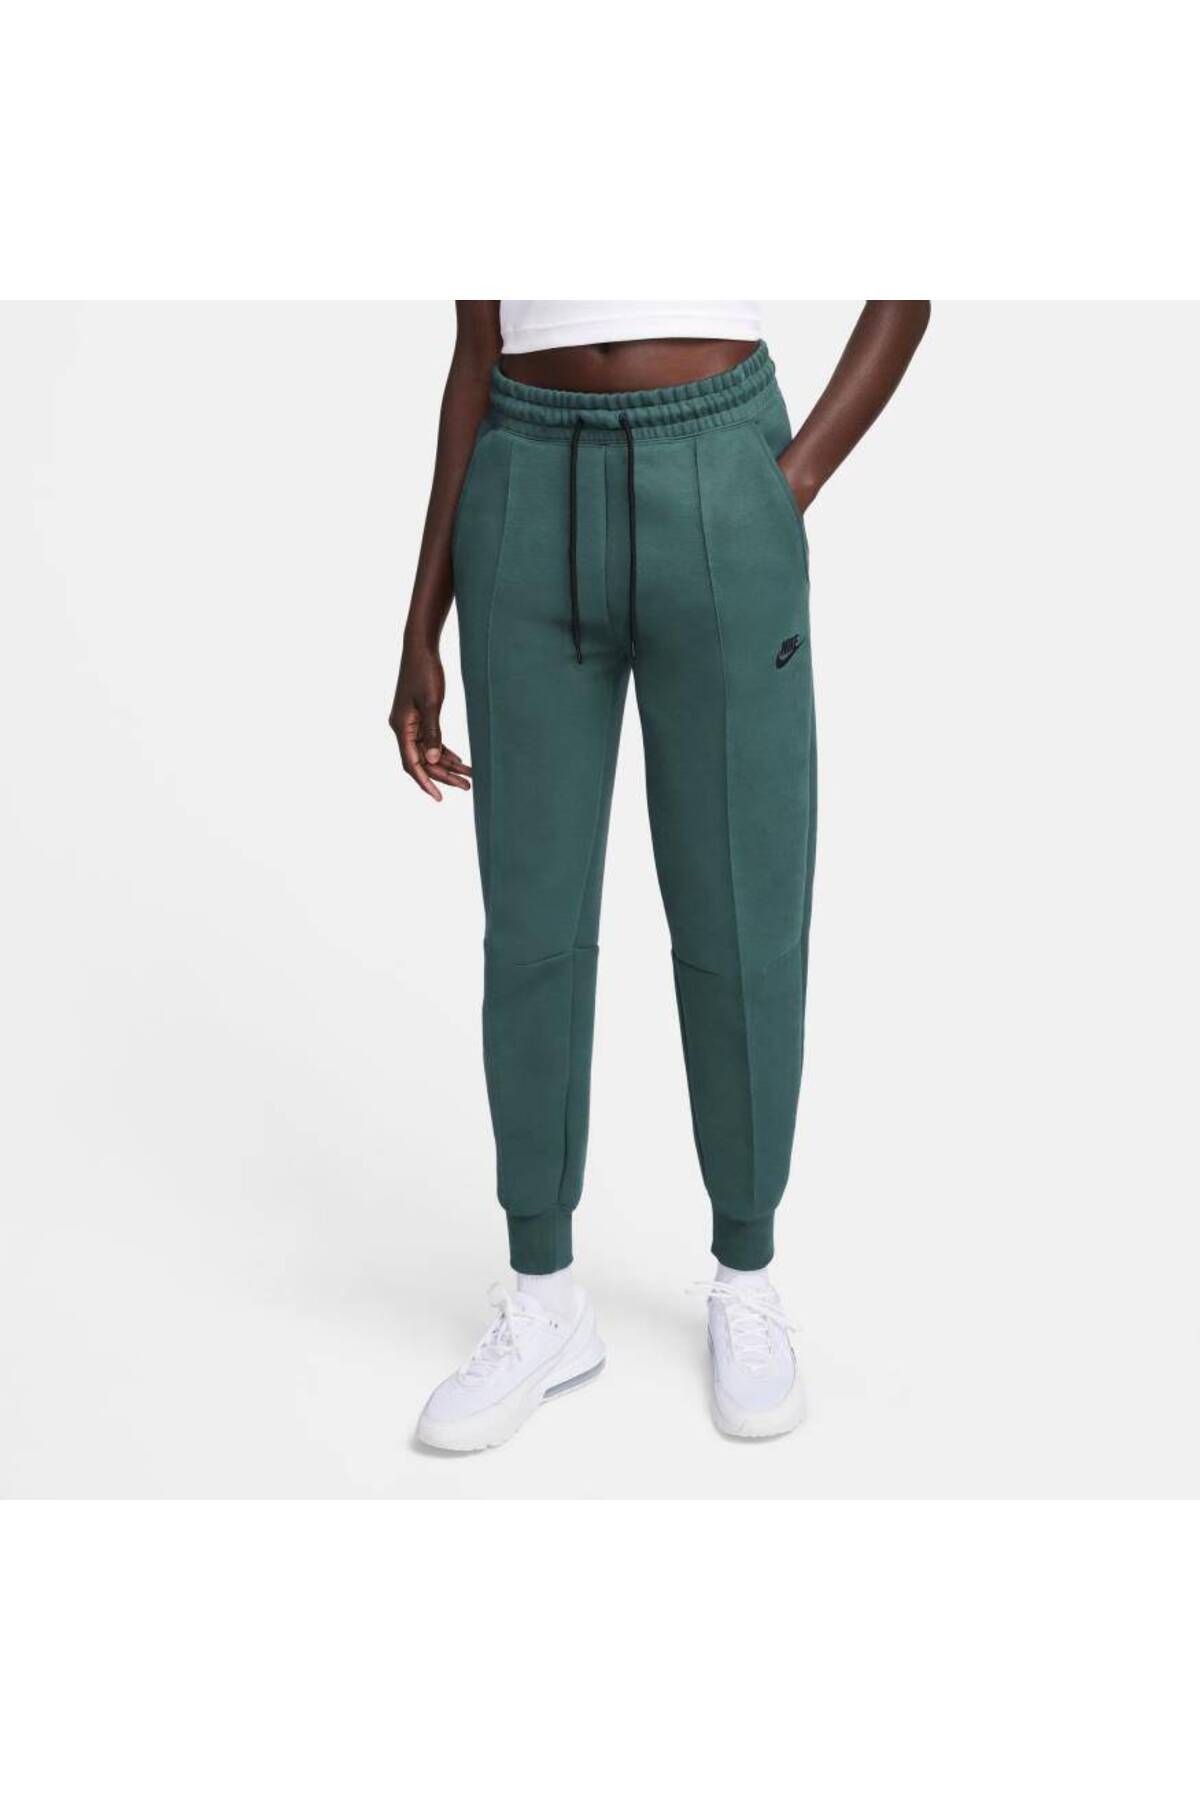 Nike Sportswear Tech Fleece Kadın Yeşil Renk Eşofman Altı